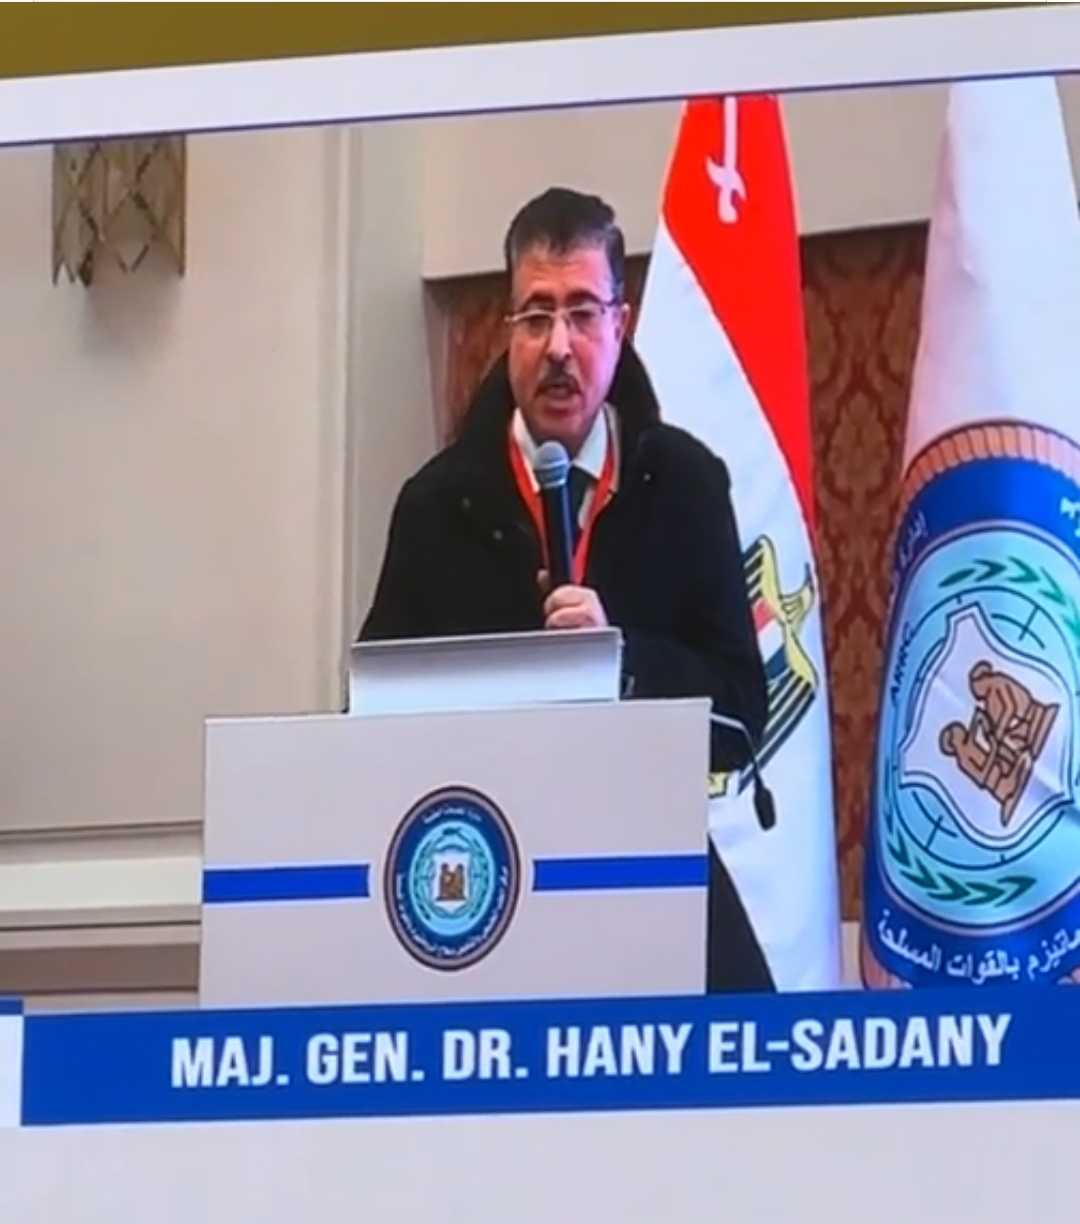 Dr. Hany EL Sadany